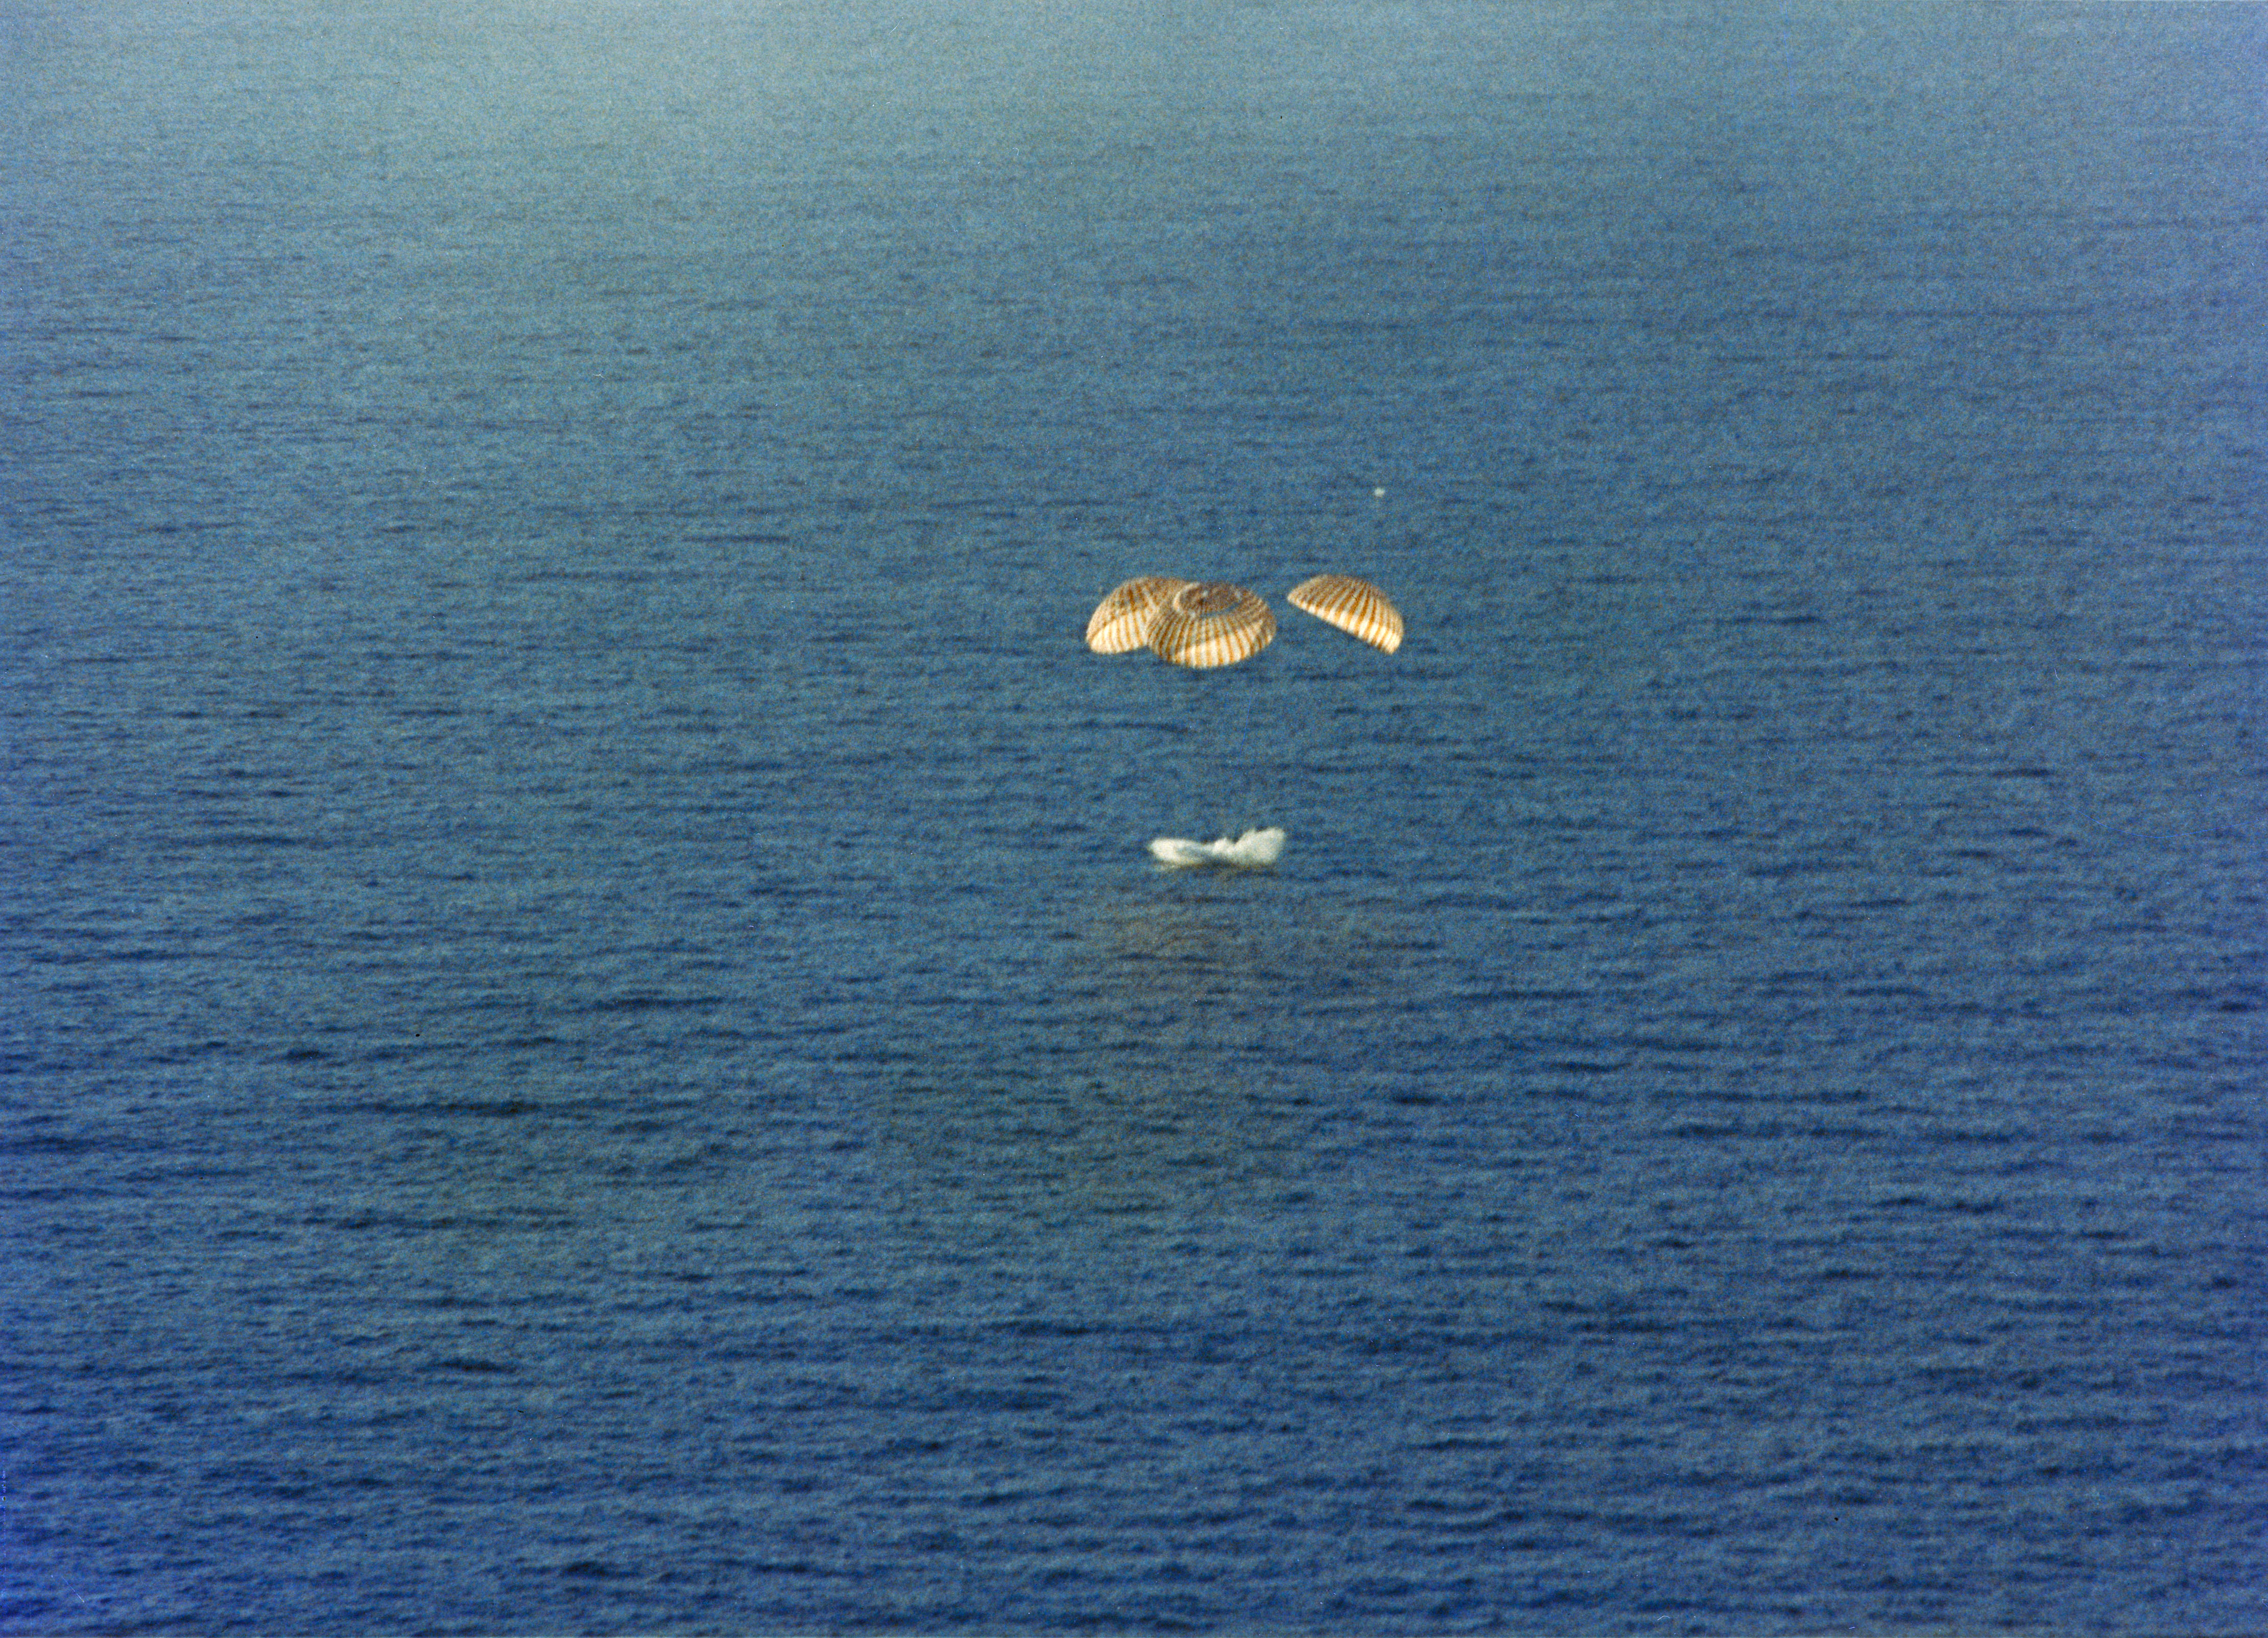 Splashdown of Skylab 4